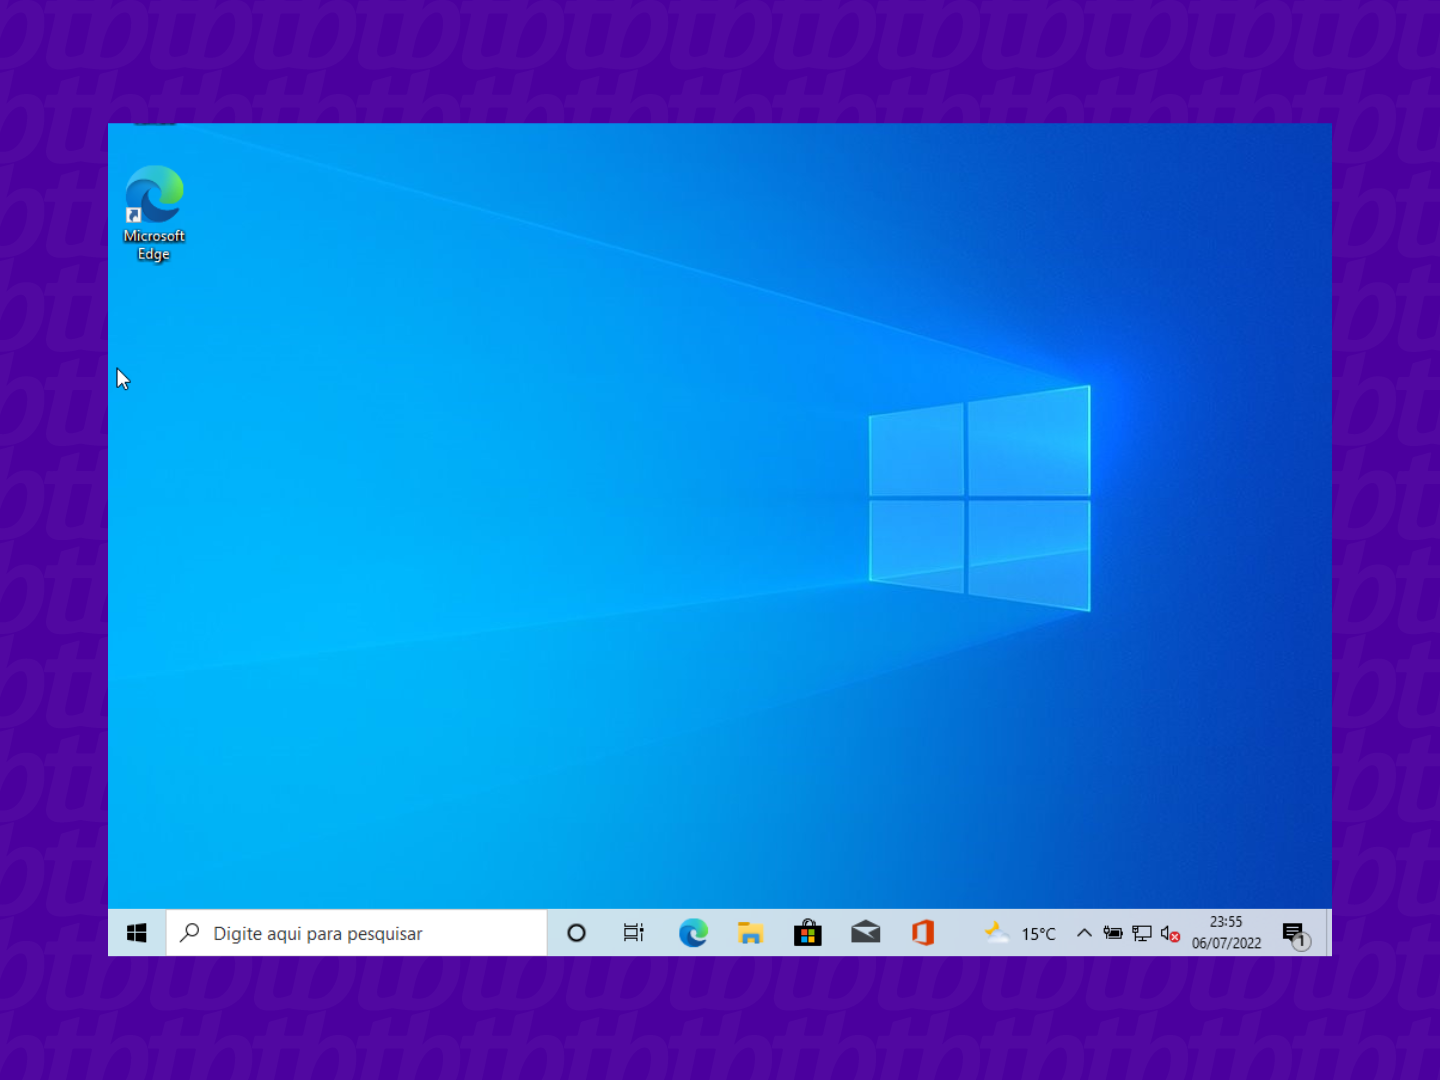 Área de trabalho do Windows 10, com logo do Windows de fundo, barra de tarefas e atalho para o Edge